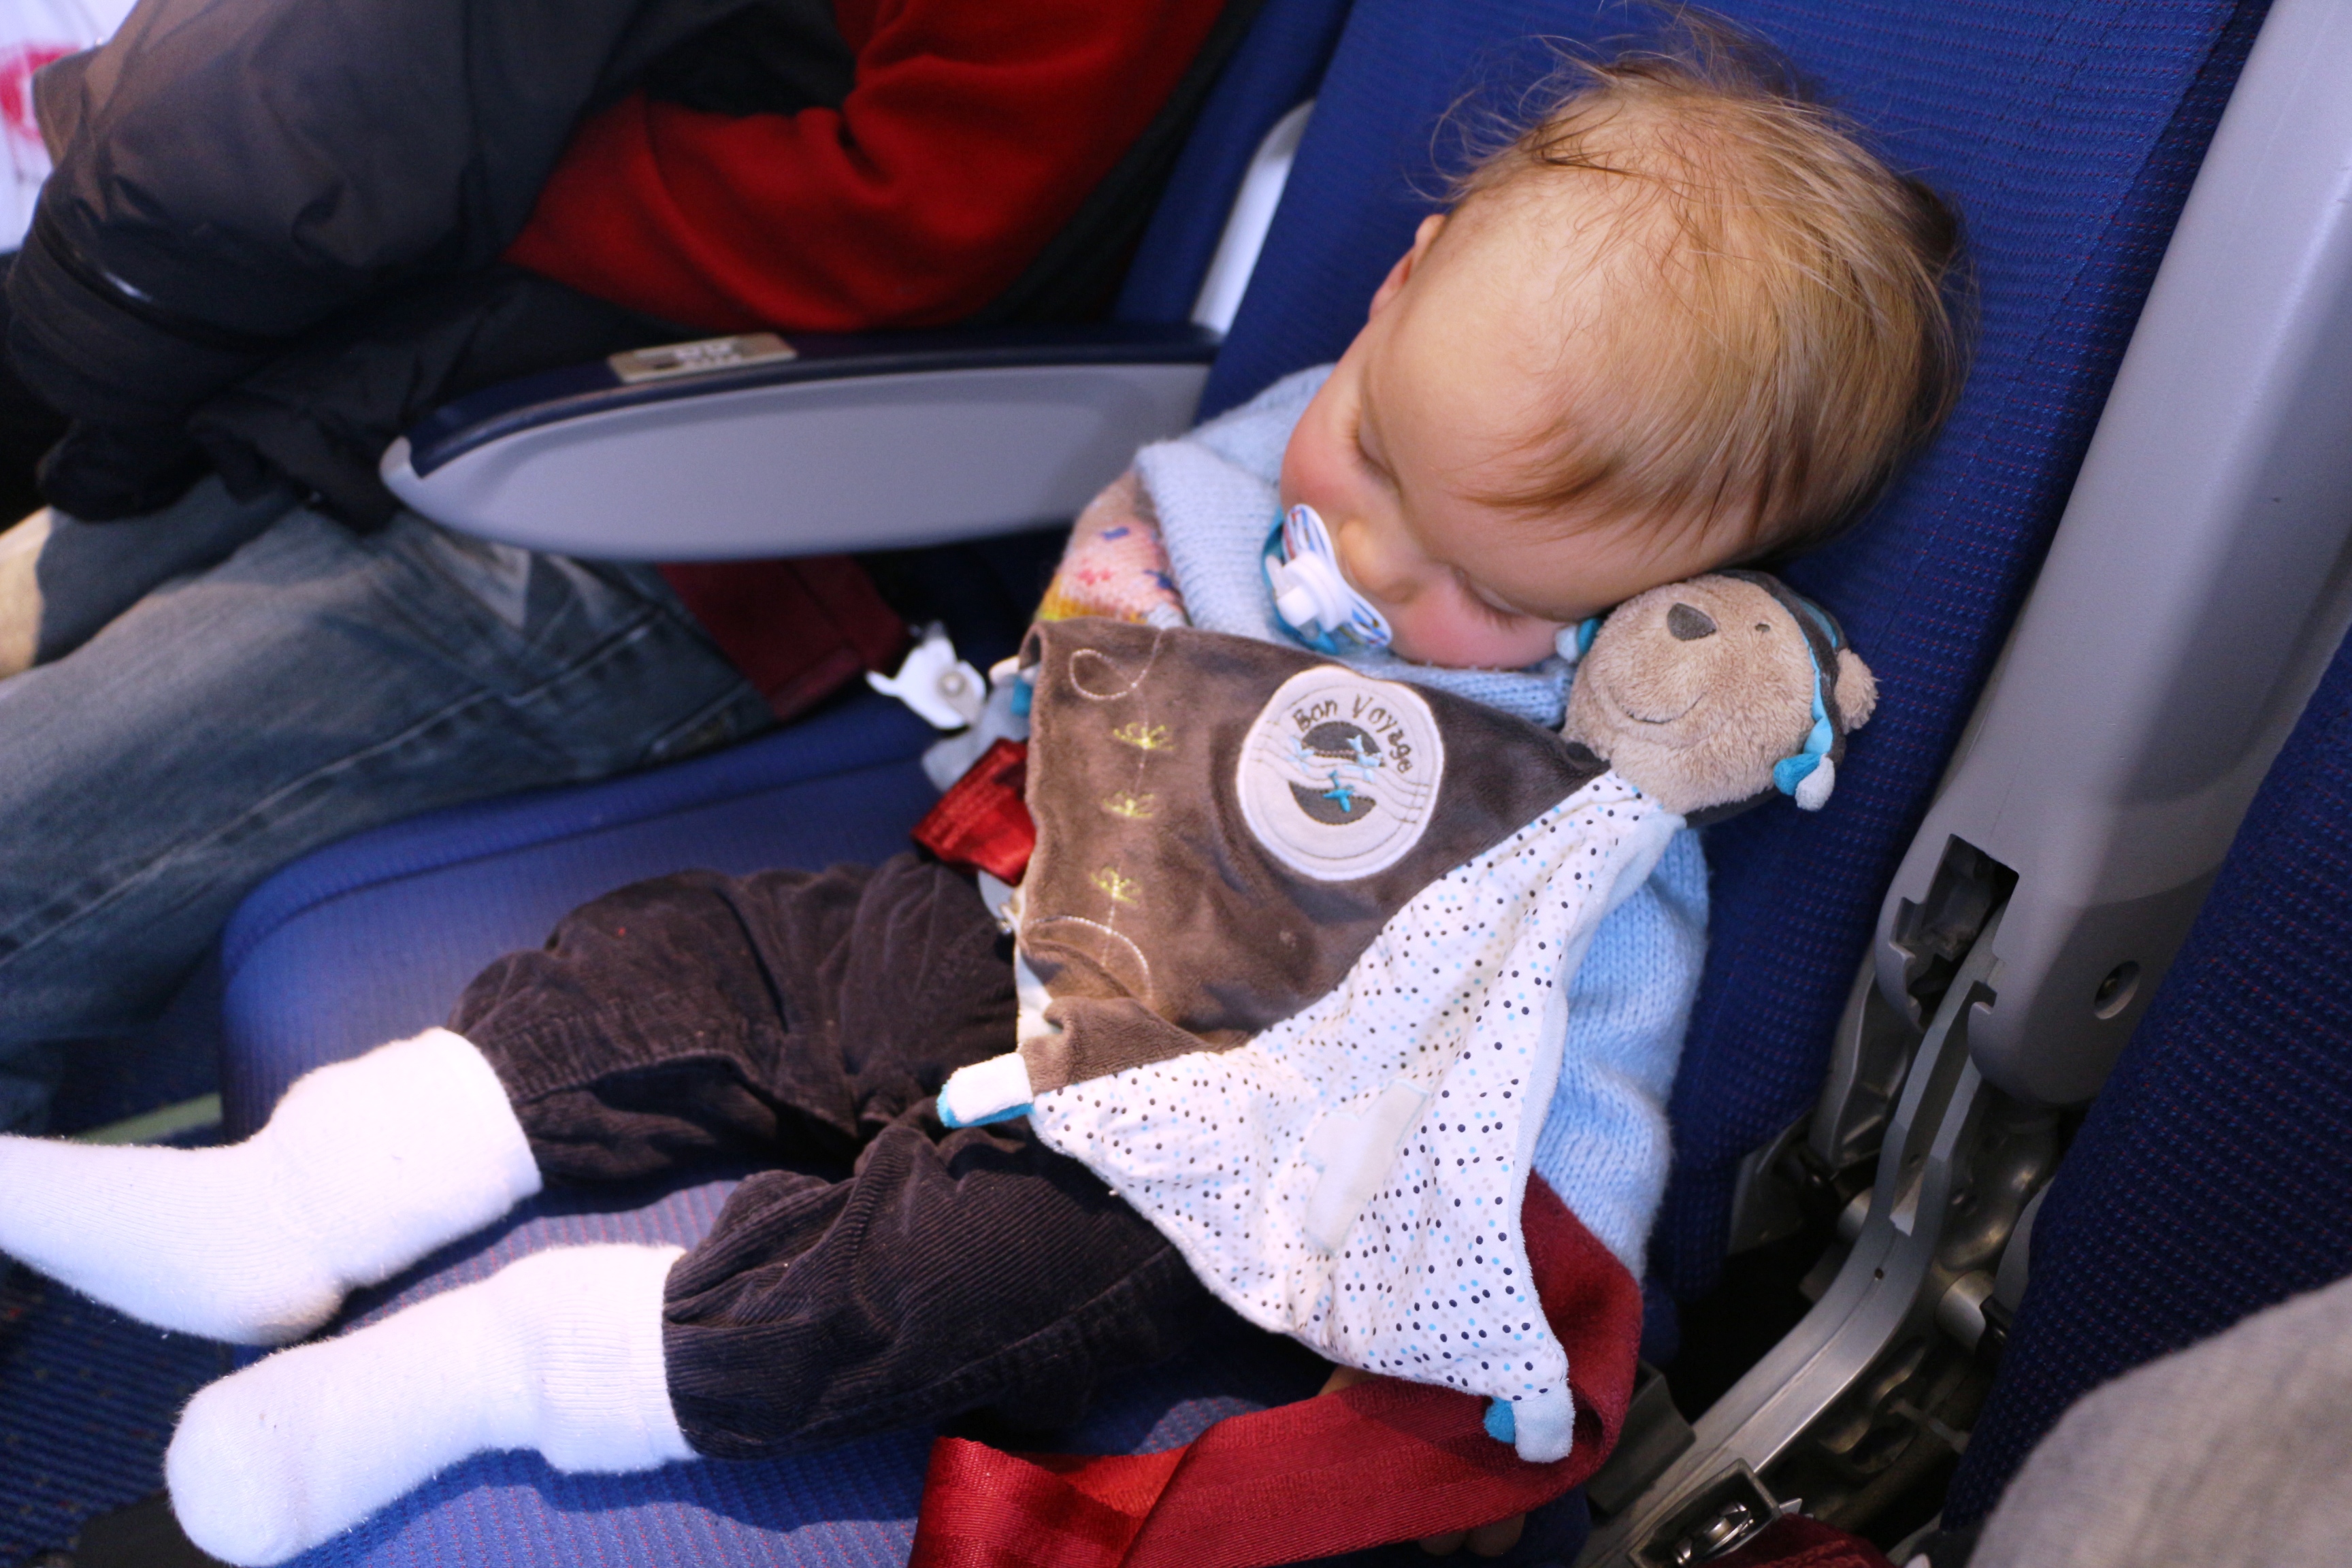 voyage en avion bebe 2 mois